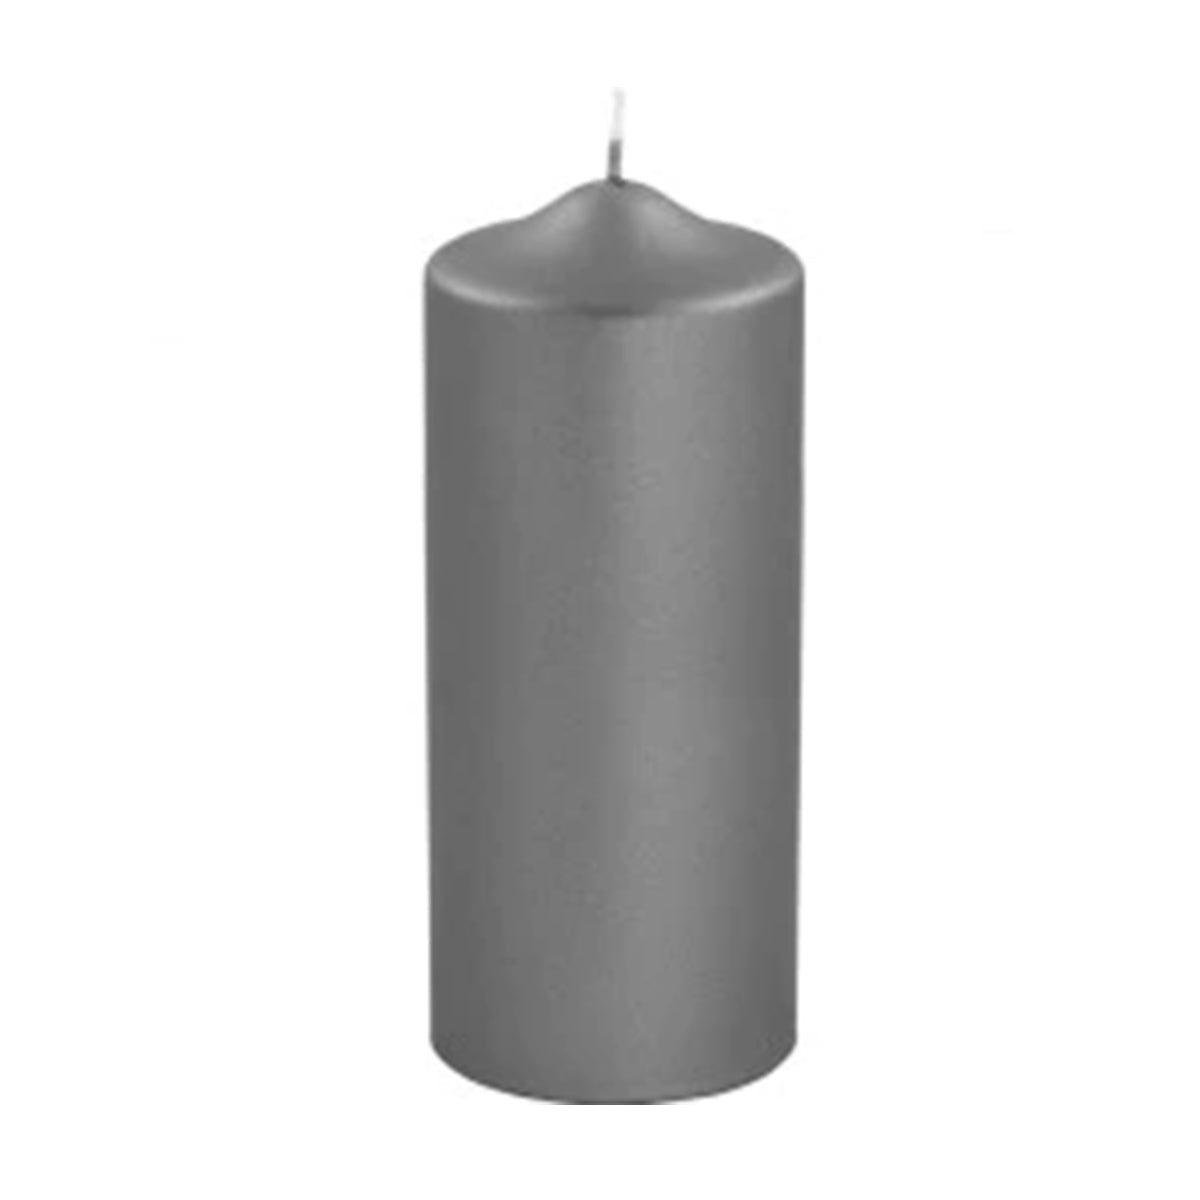 Graue metallische Kerze 20 cm